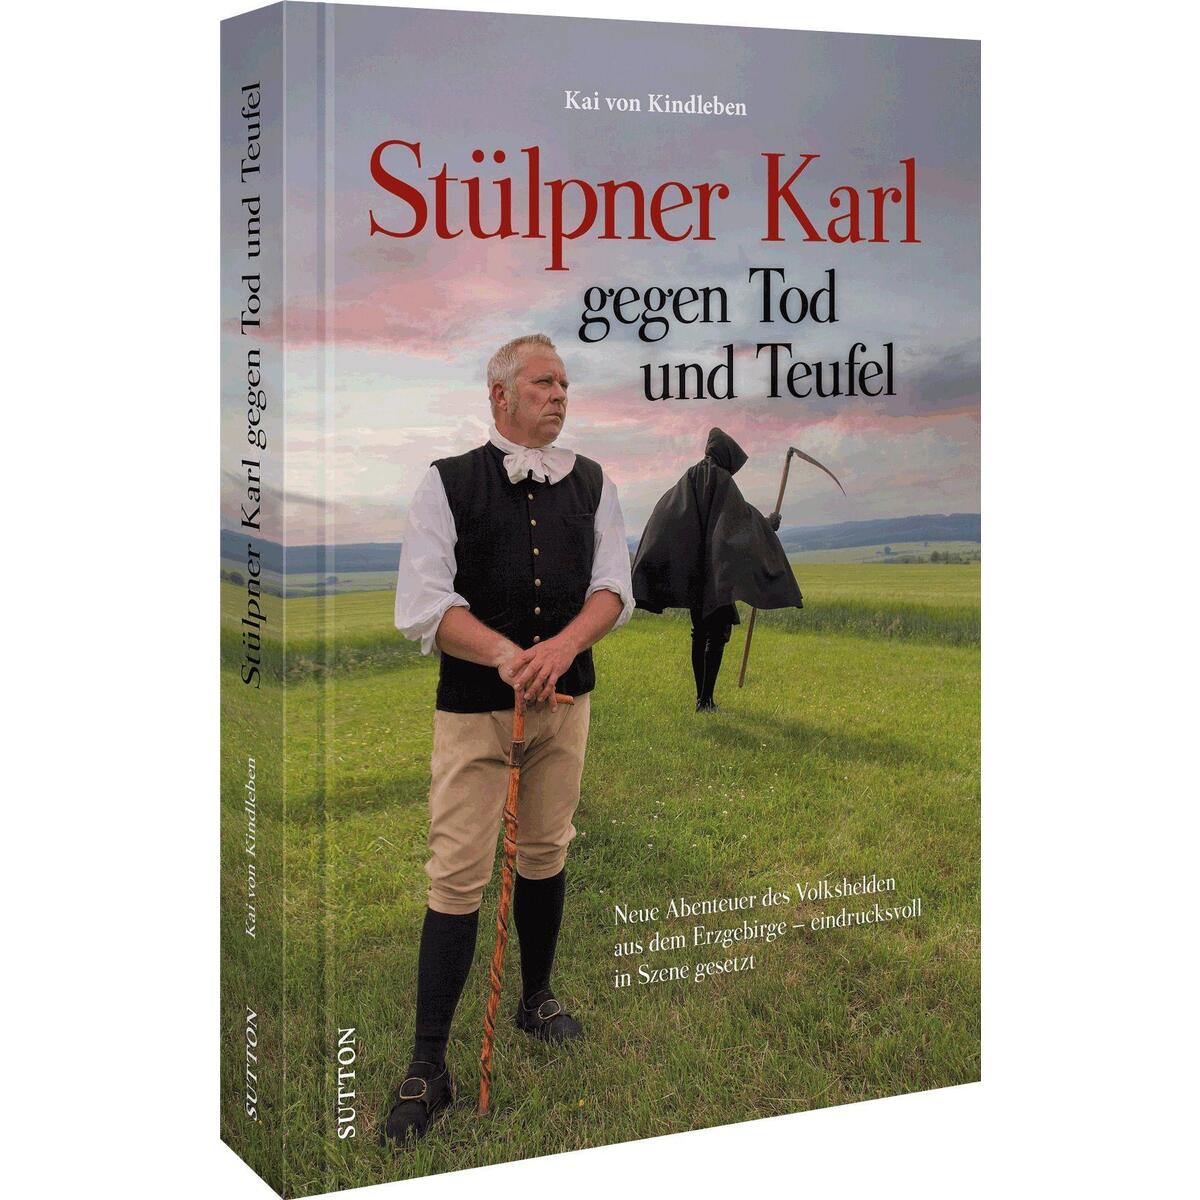 Stülpner Karl gegen Tod und Teufel von Sutton Verlag GmbH